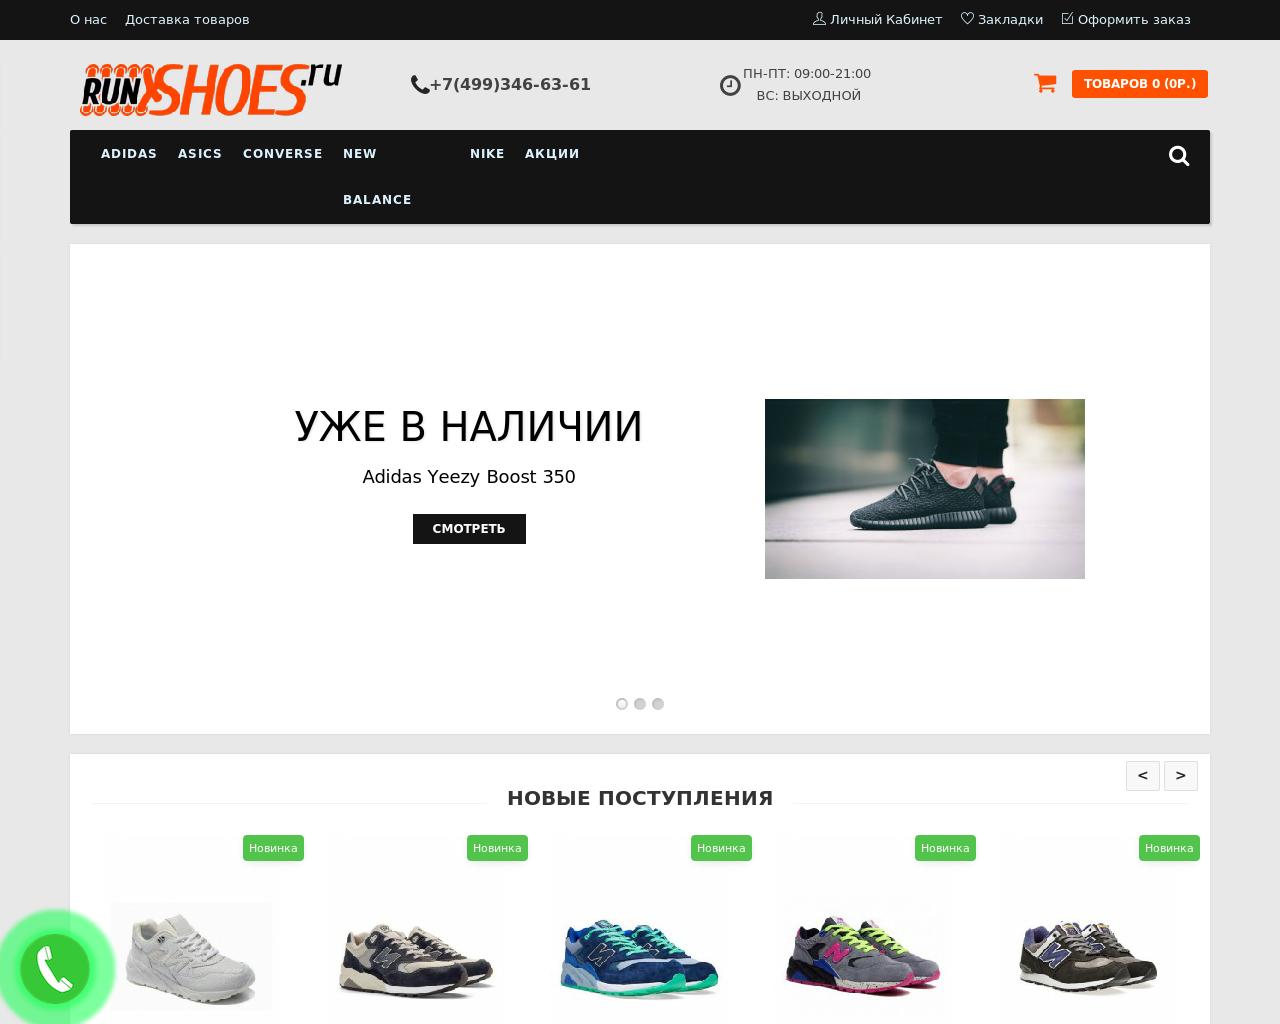 Изображение сайта runshoes.ru в разрешении 1280x1024